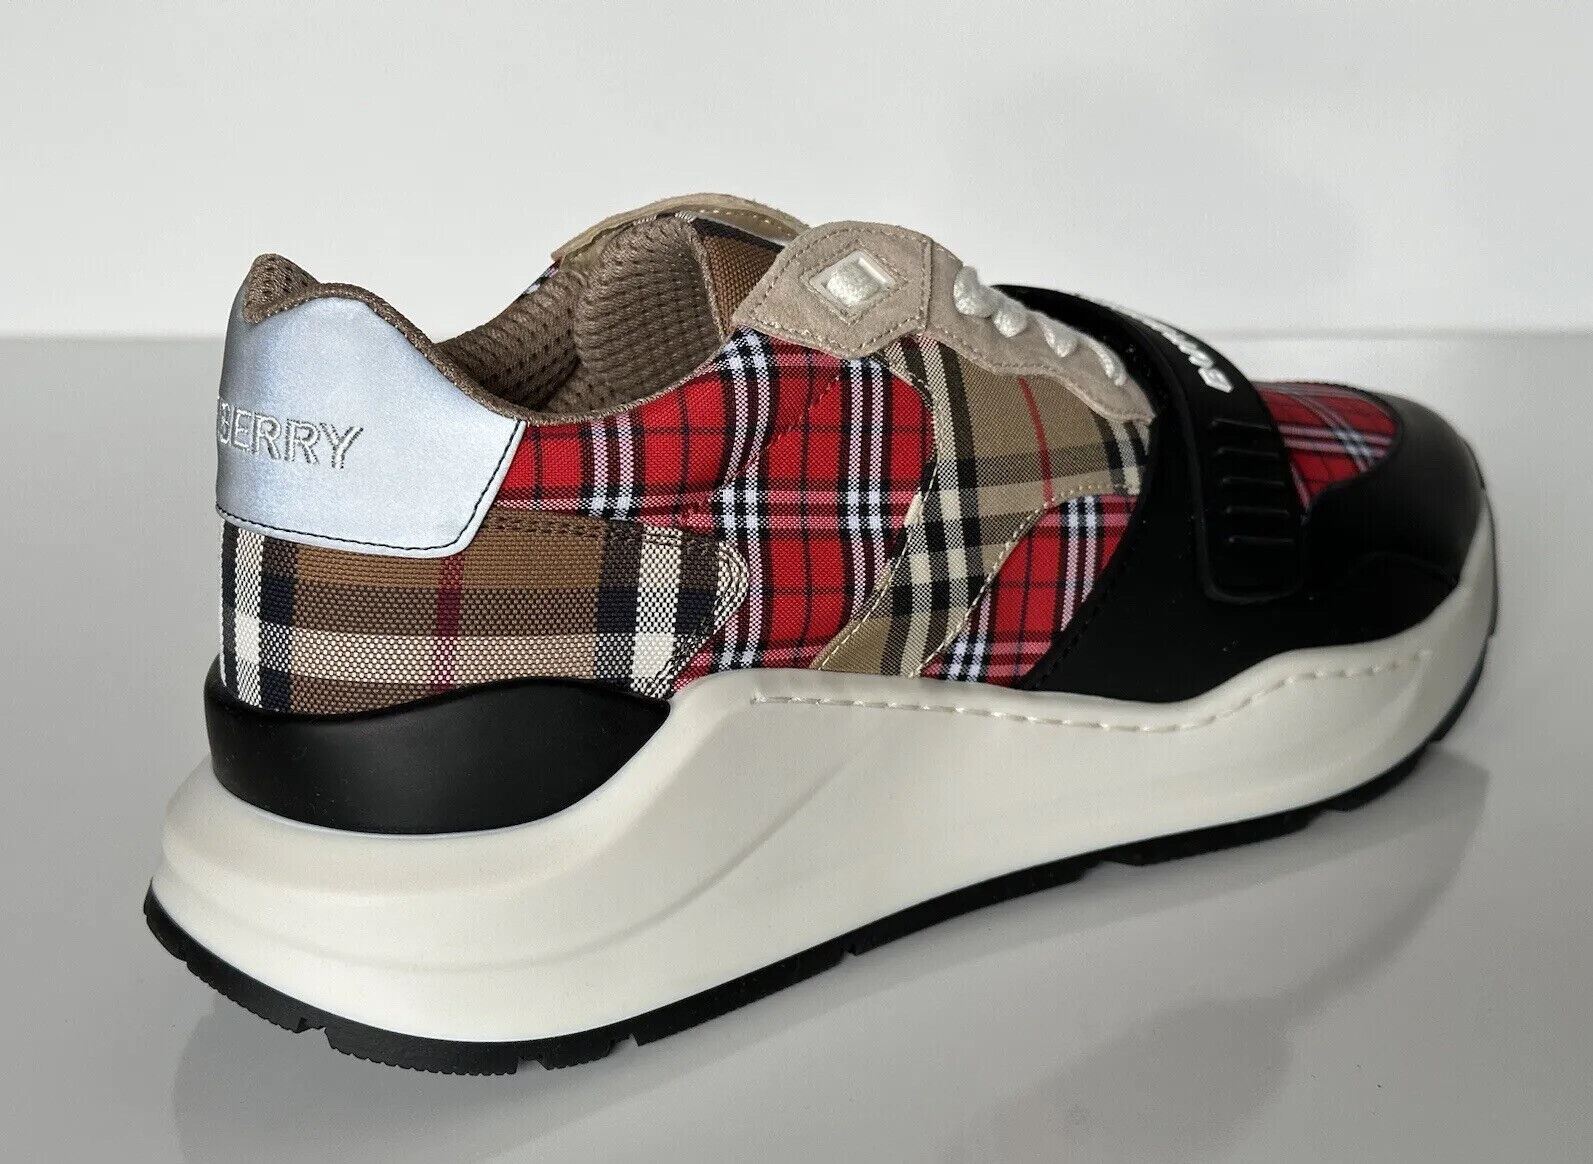 Мужские разноцветные кроссовки Ramsey Burberry 790 долларов США 12 США (45 евро) 8048632 Италия 